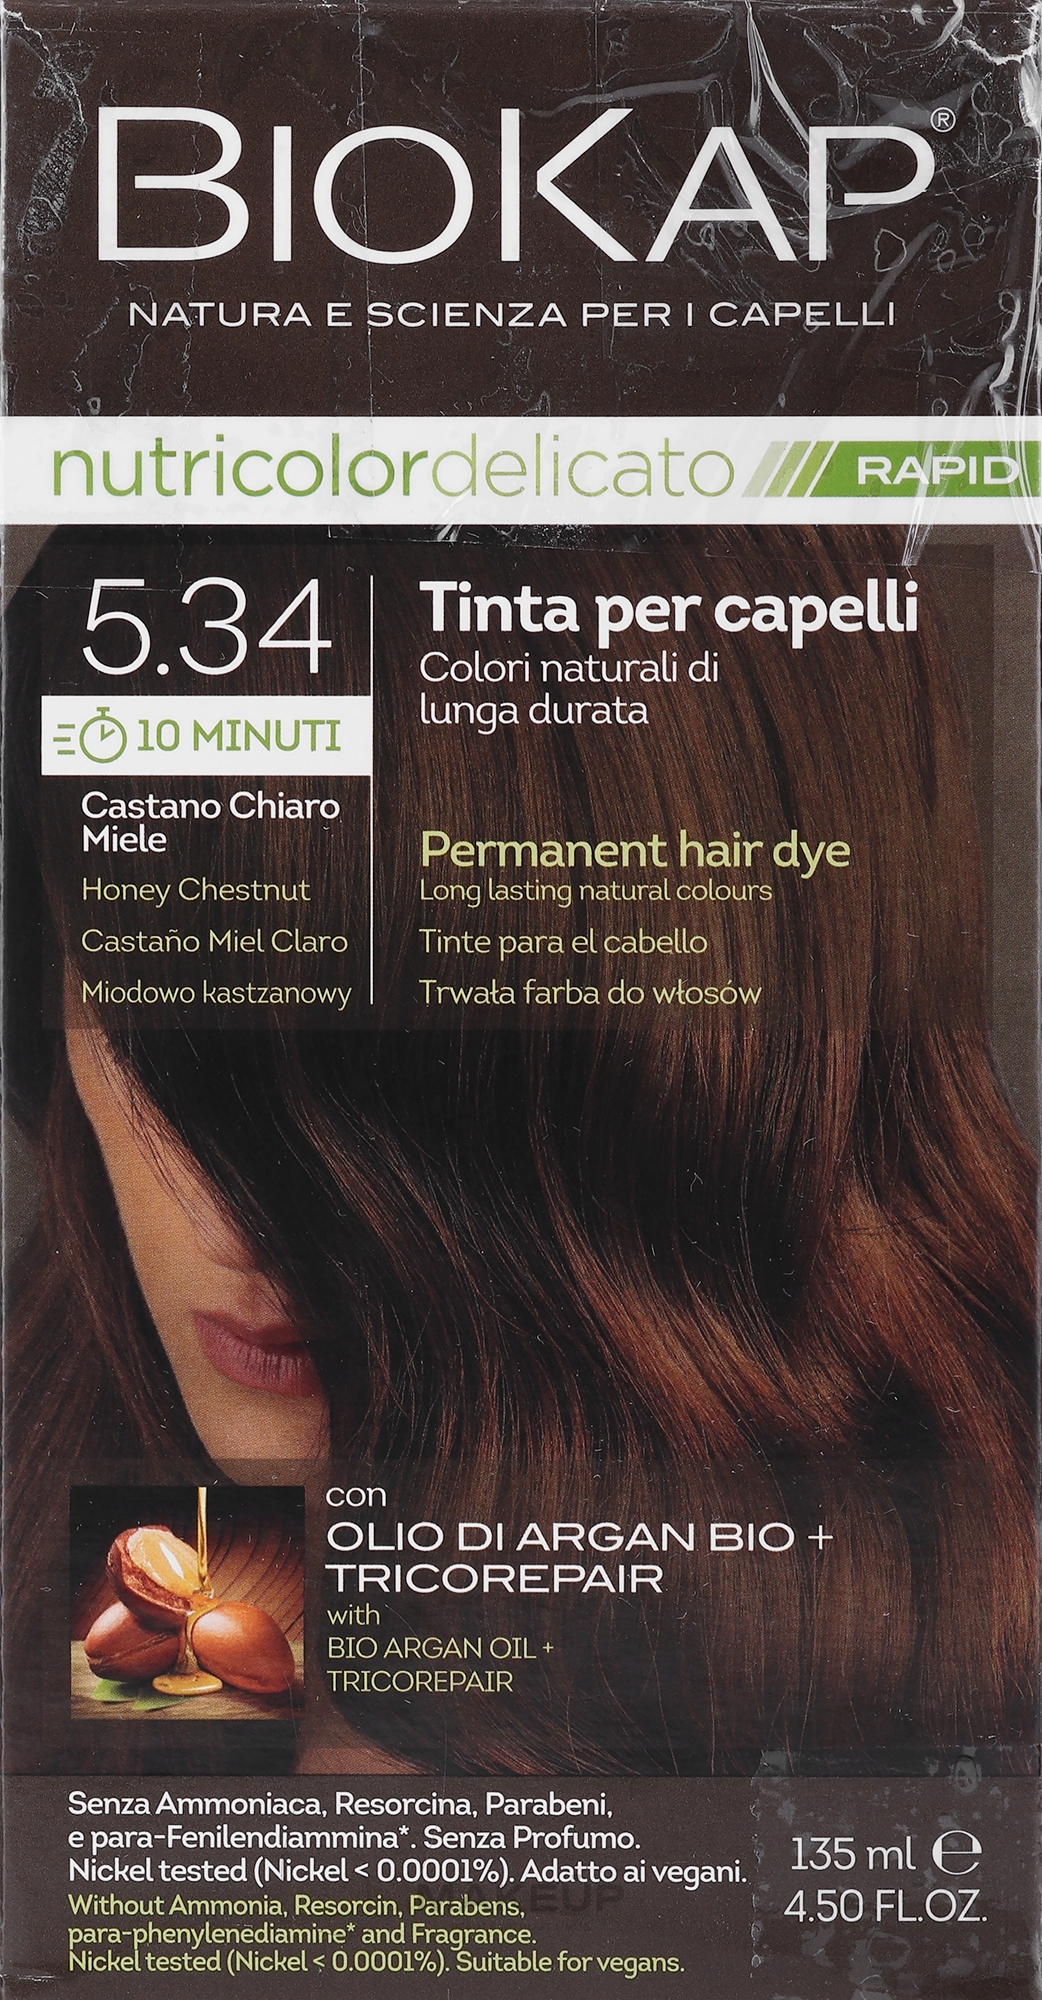 PRZECENA! Farba do włosów - BiosLine Biokap Nutricolor Delicato Rapid * — Zdjęcie 5.34